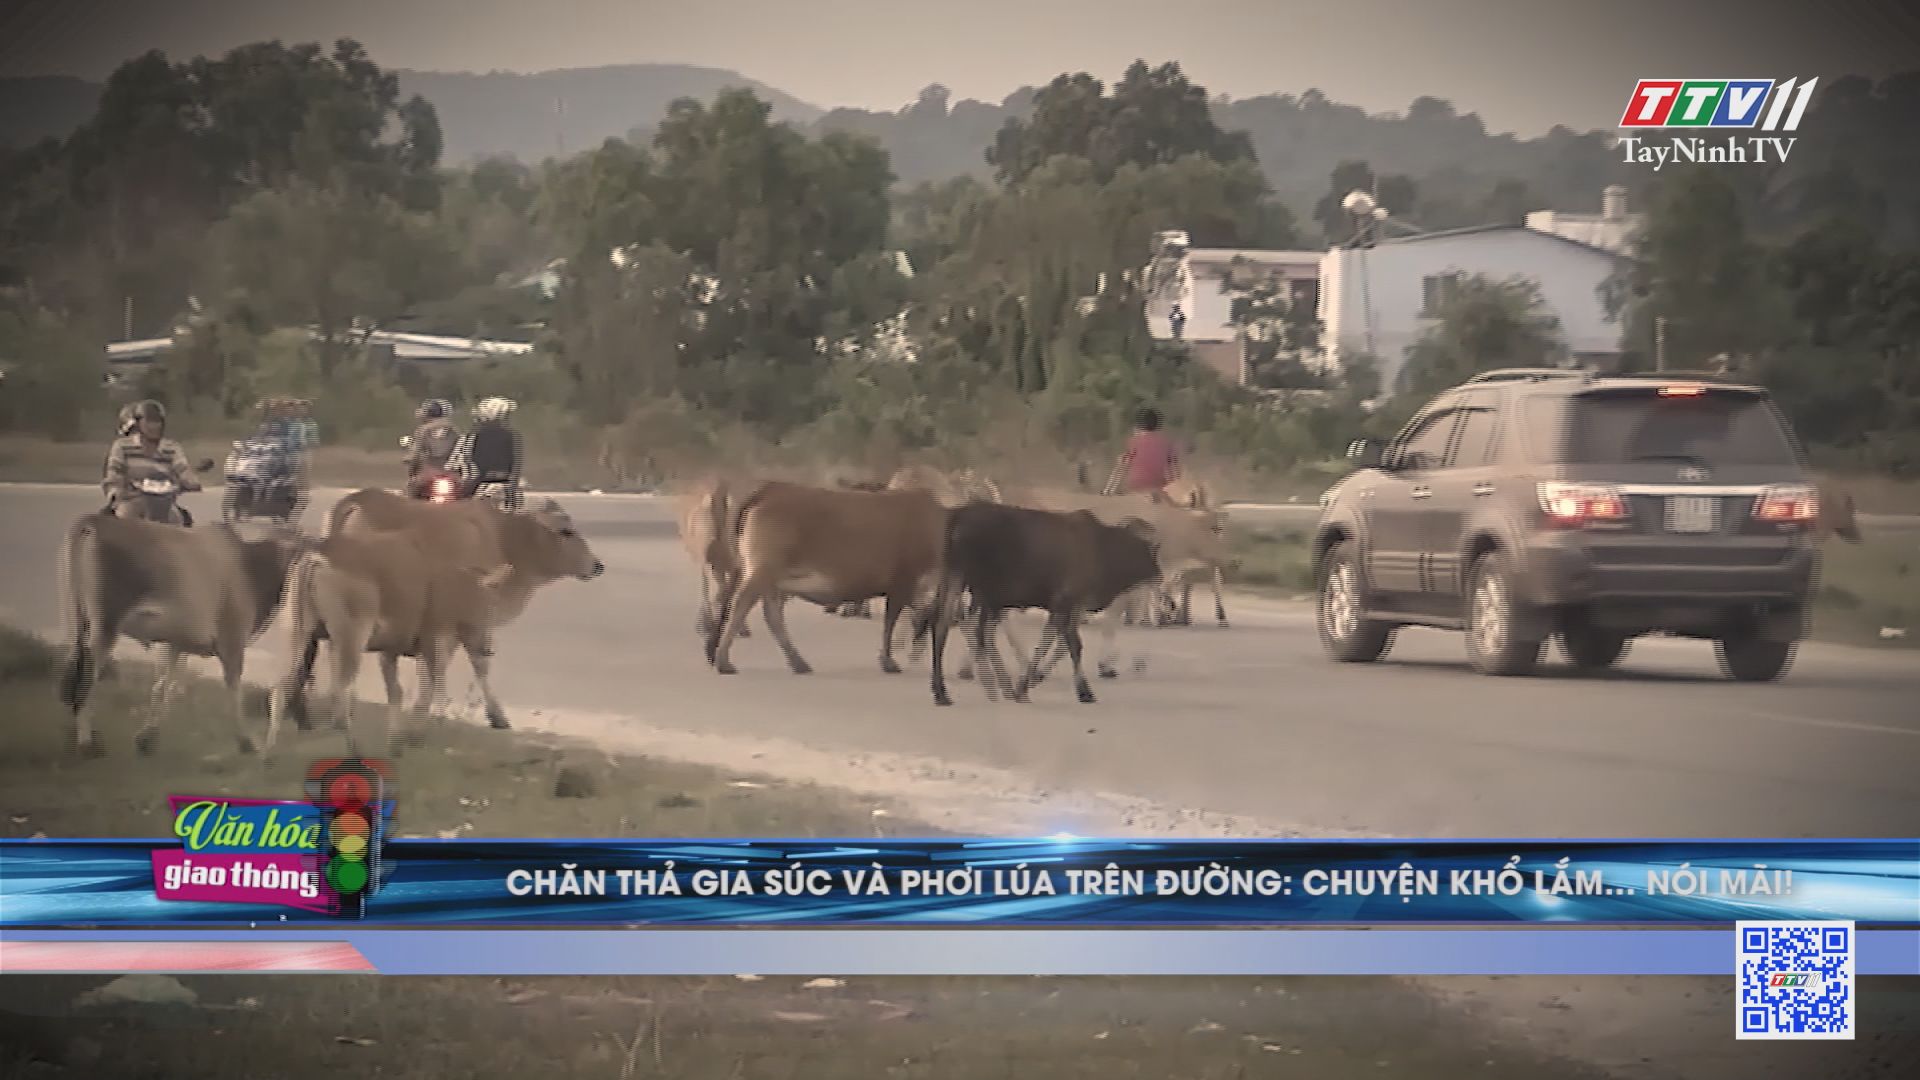 Chăn thả gia súc và phơi lúa trên đường: chuyện khổ lắm... nói mãi | Văn hóa giao thông | TayNinhTV